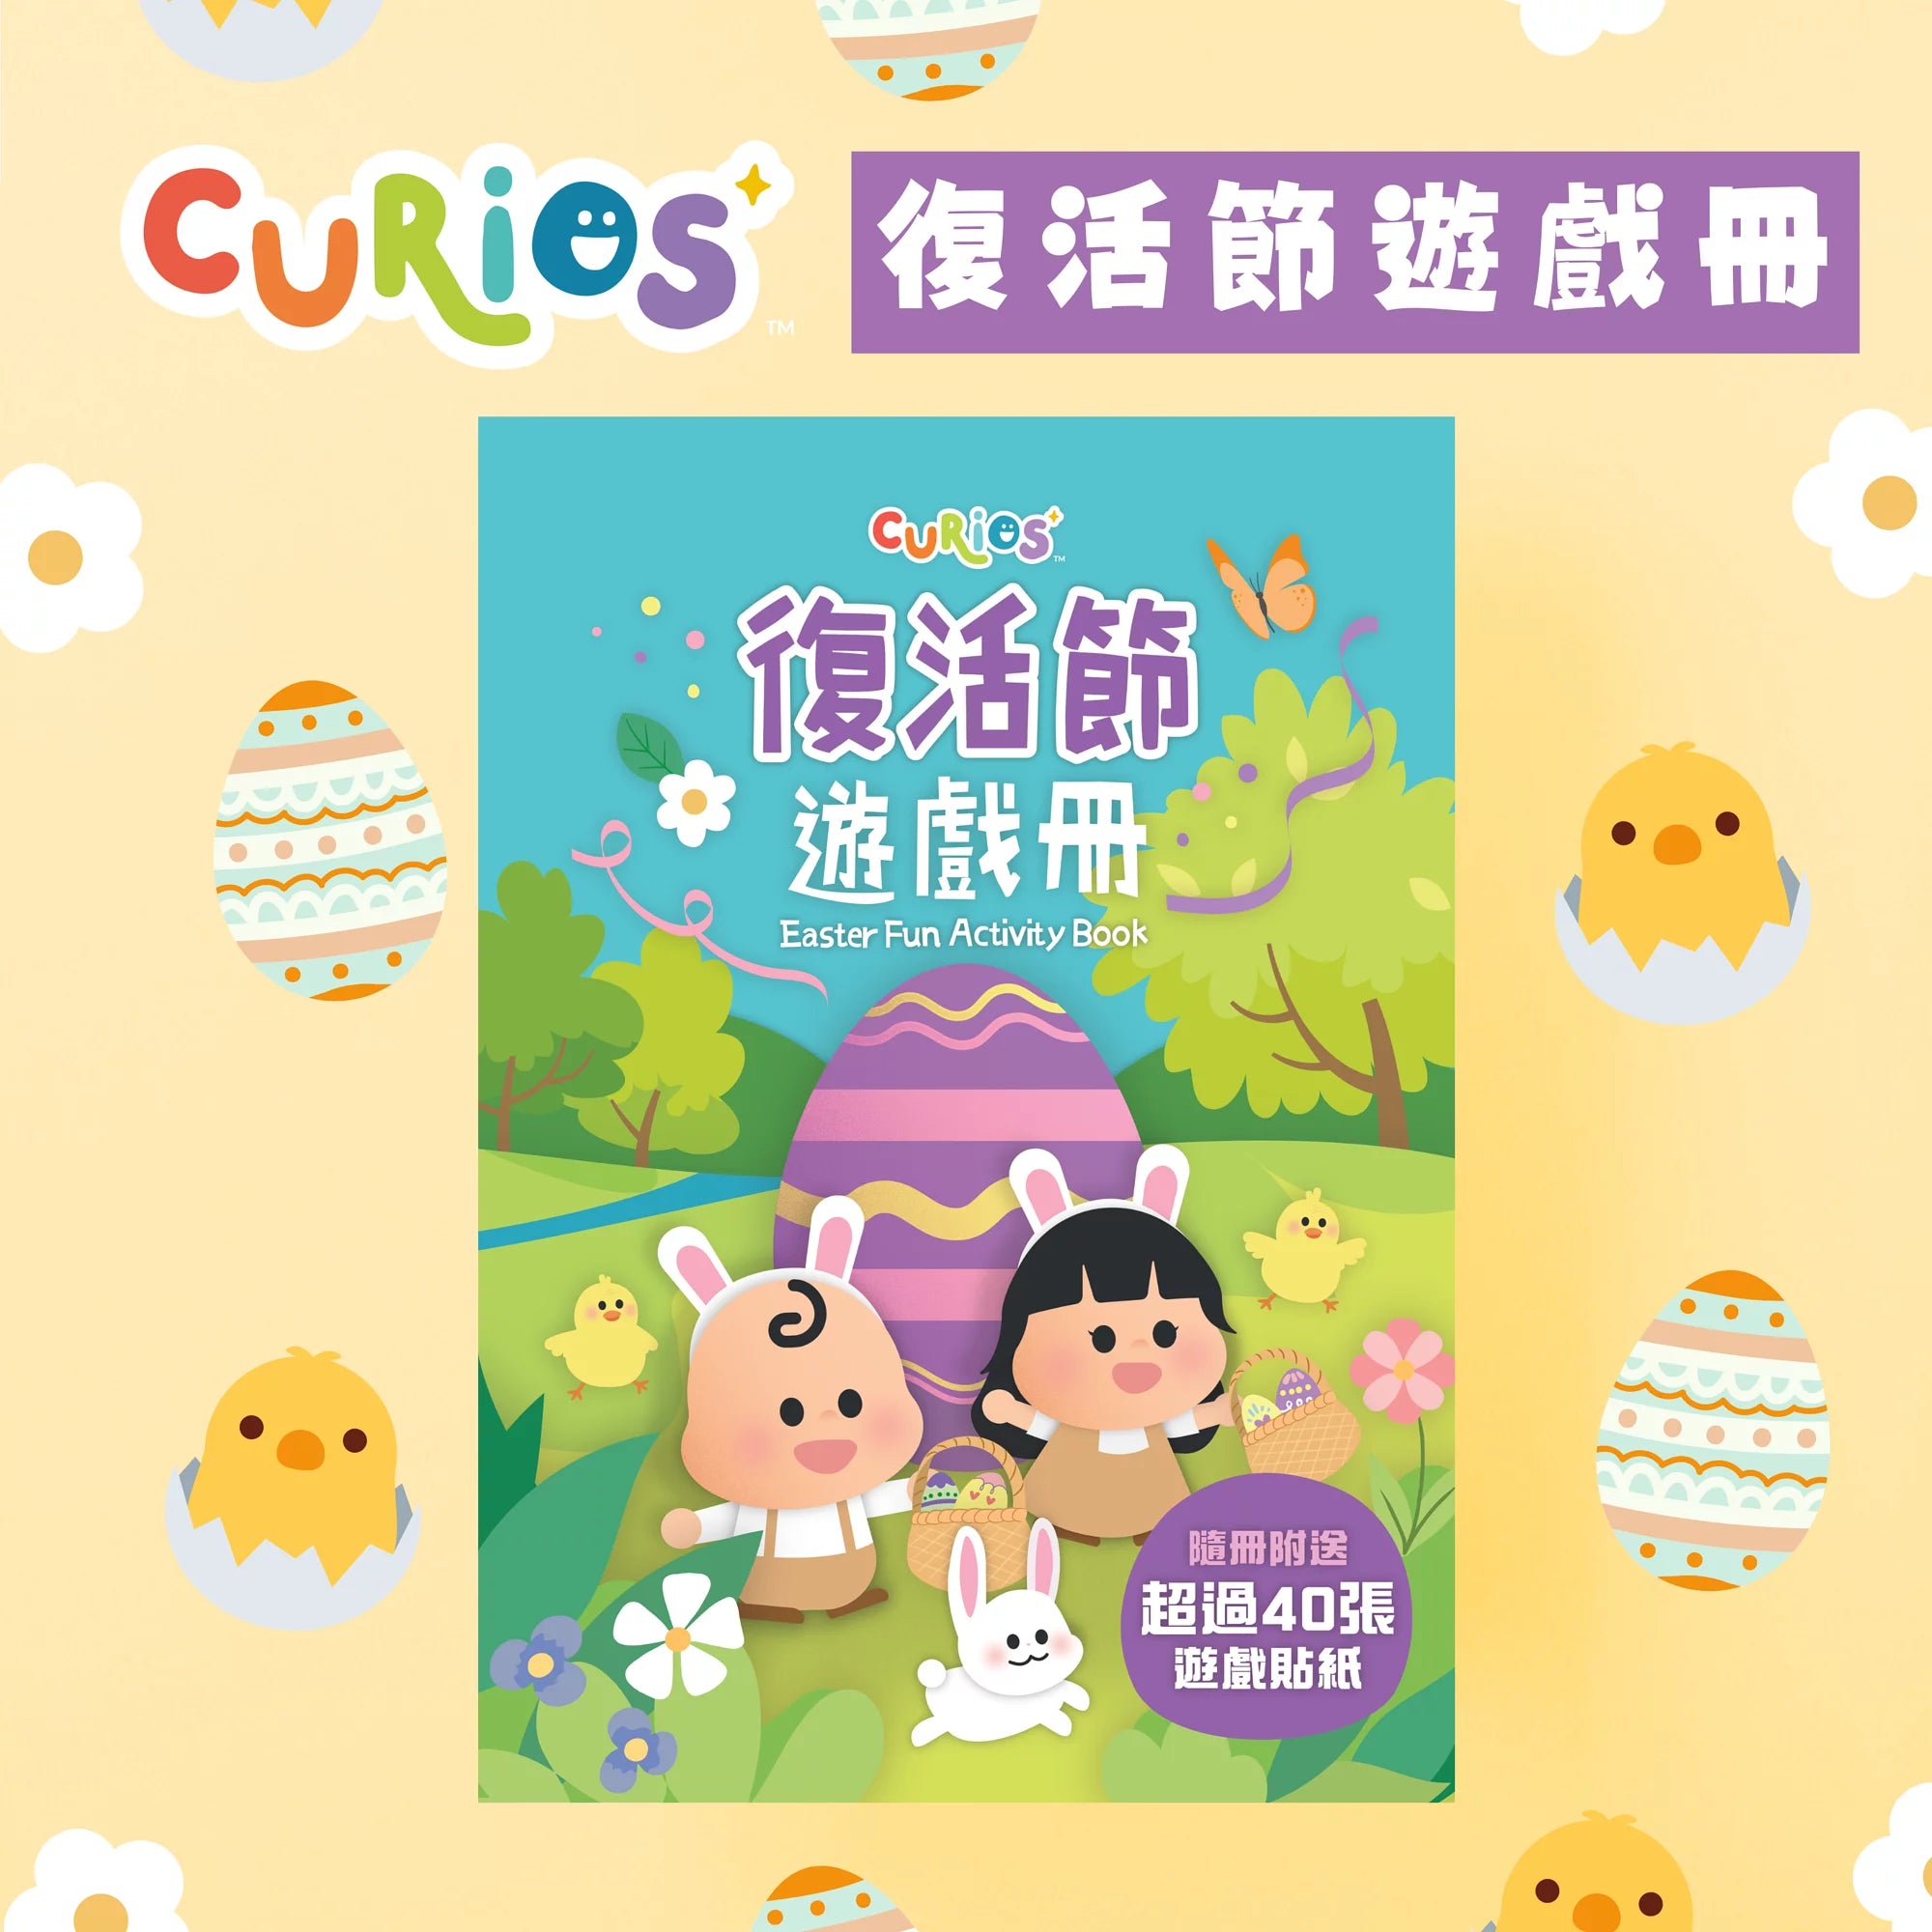 Curios Easter Fun Activity Book